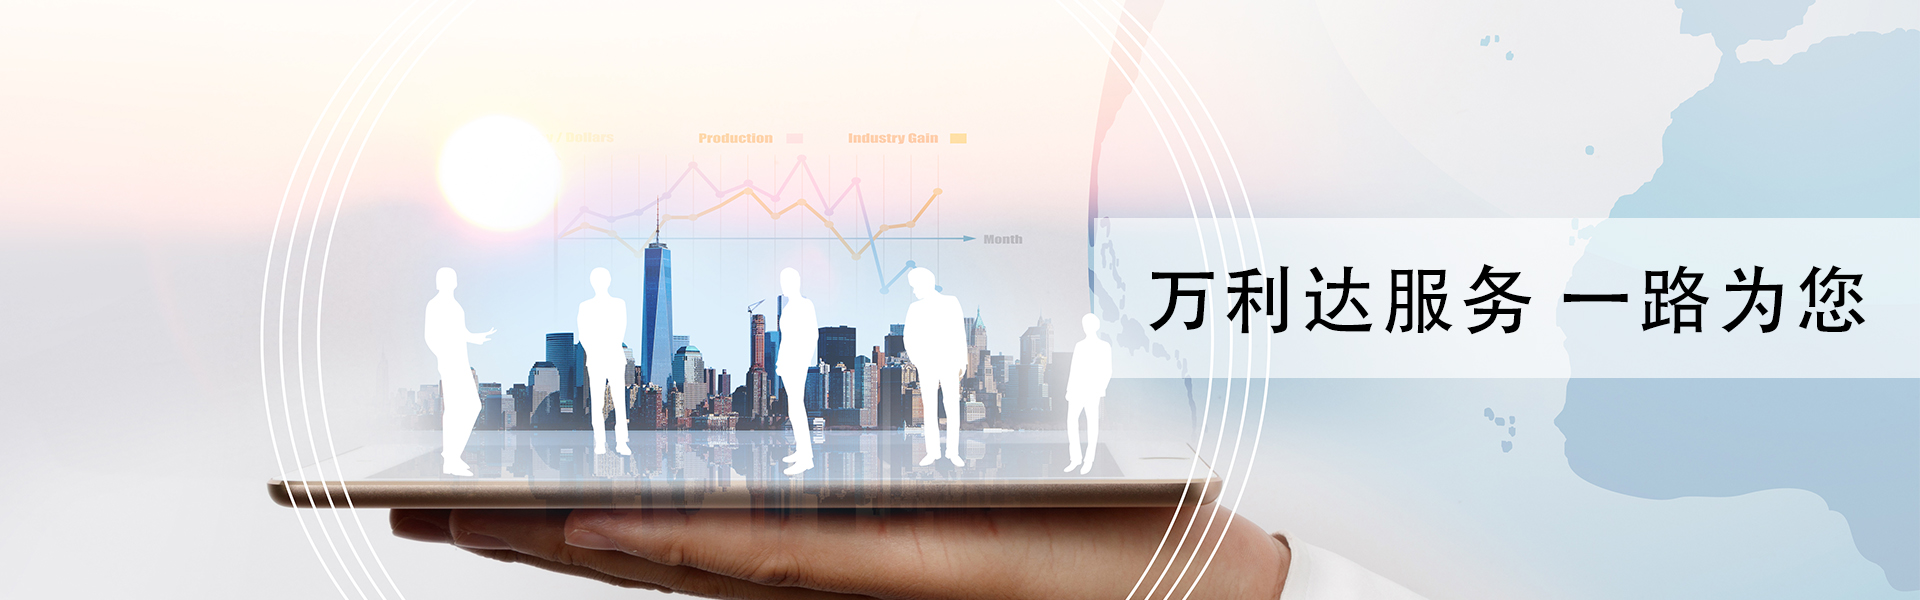 经销商系统_广州市天谱电器有限公司万利达品牌网站